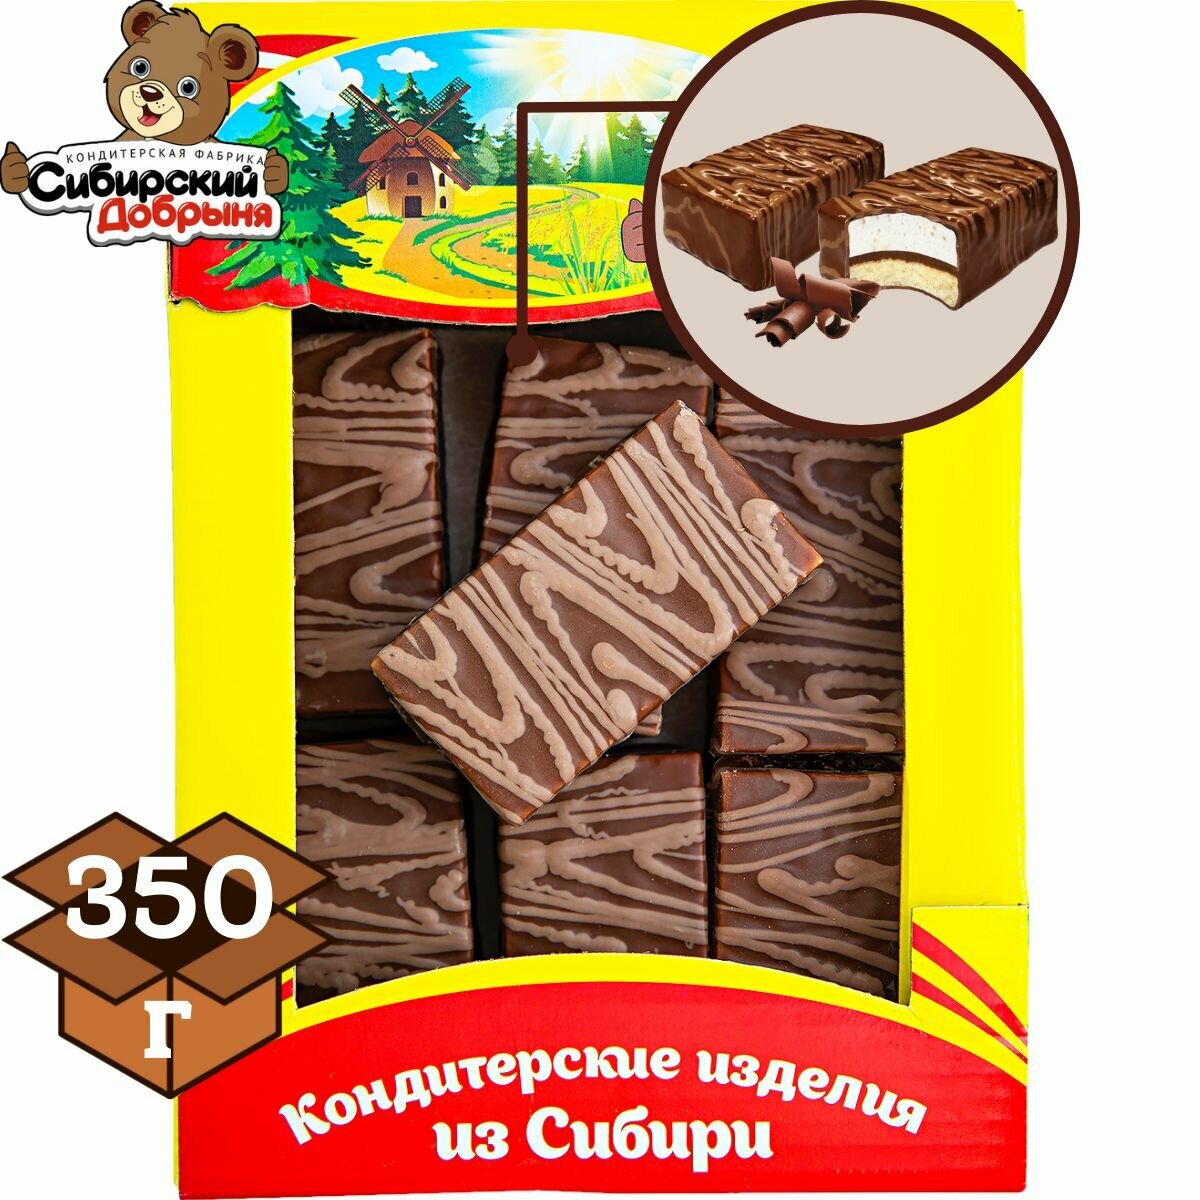 Пирожные двойной десерт шоколад 350 гр , мишка в малиннике , Сибирский добрыня